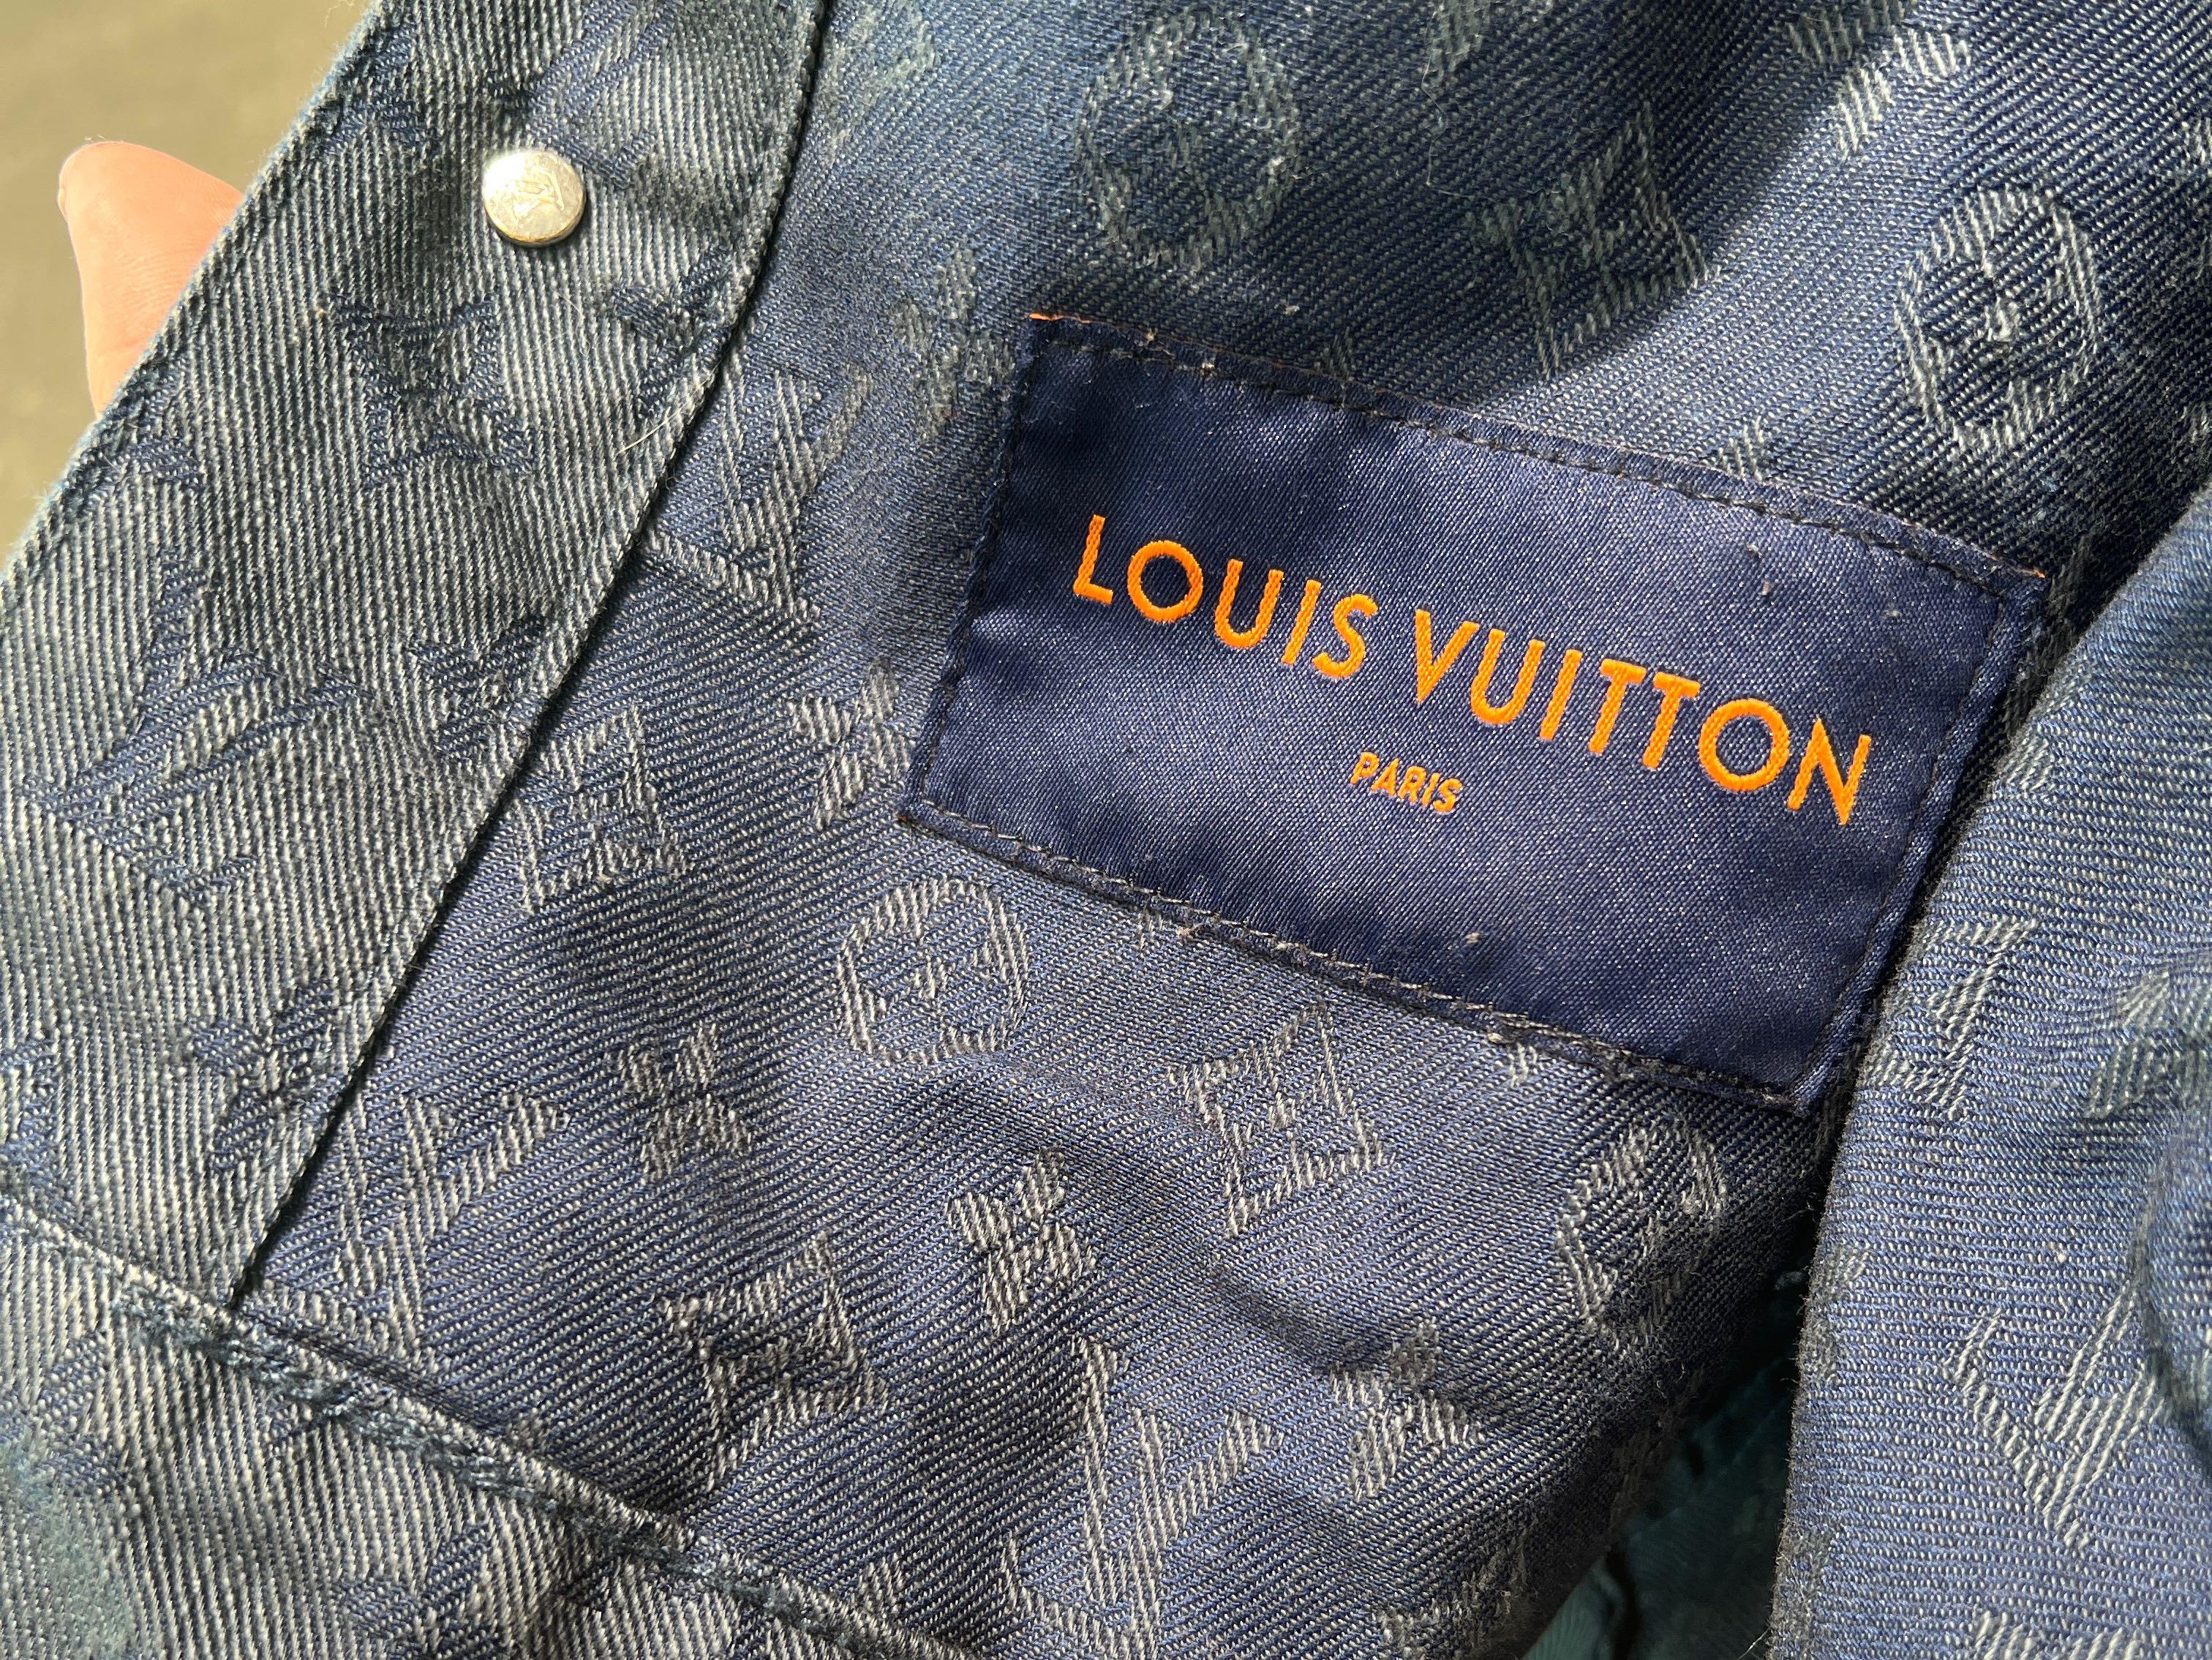 Authentic LOUIS VUITTON Denim Jackets #241-003-124-8742